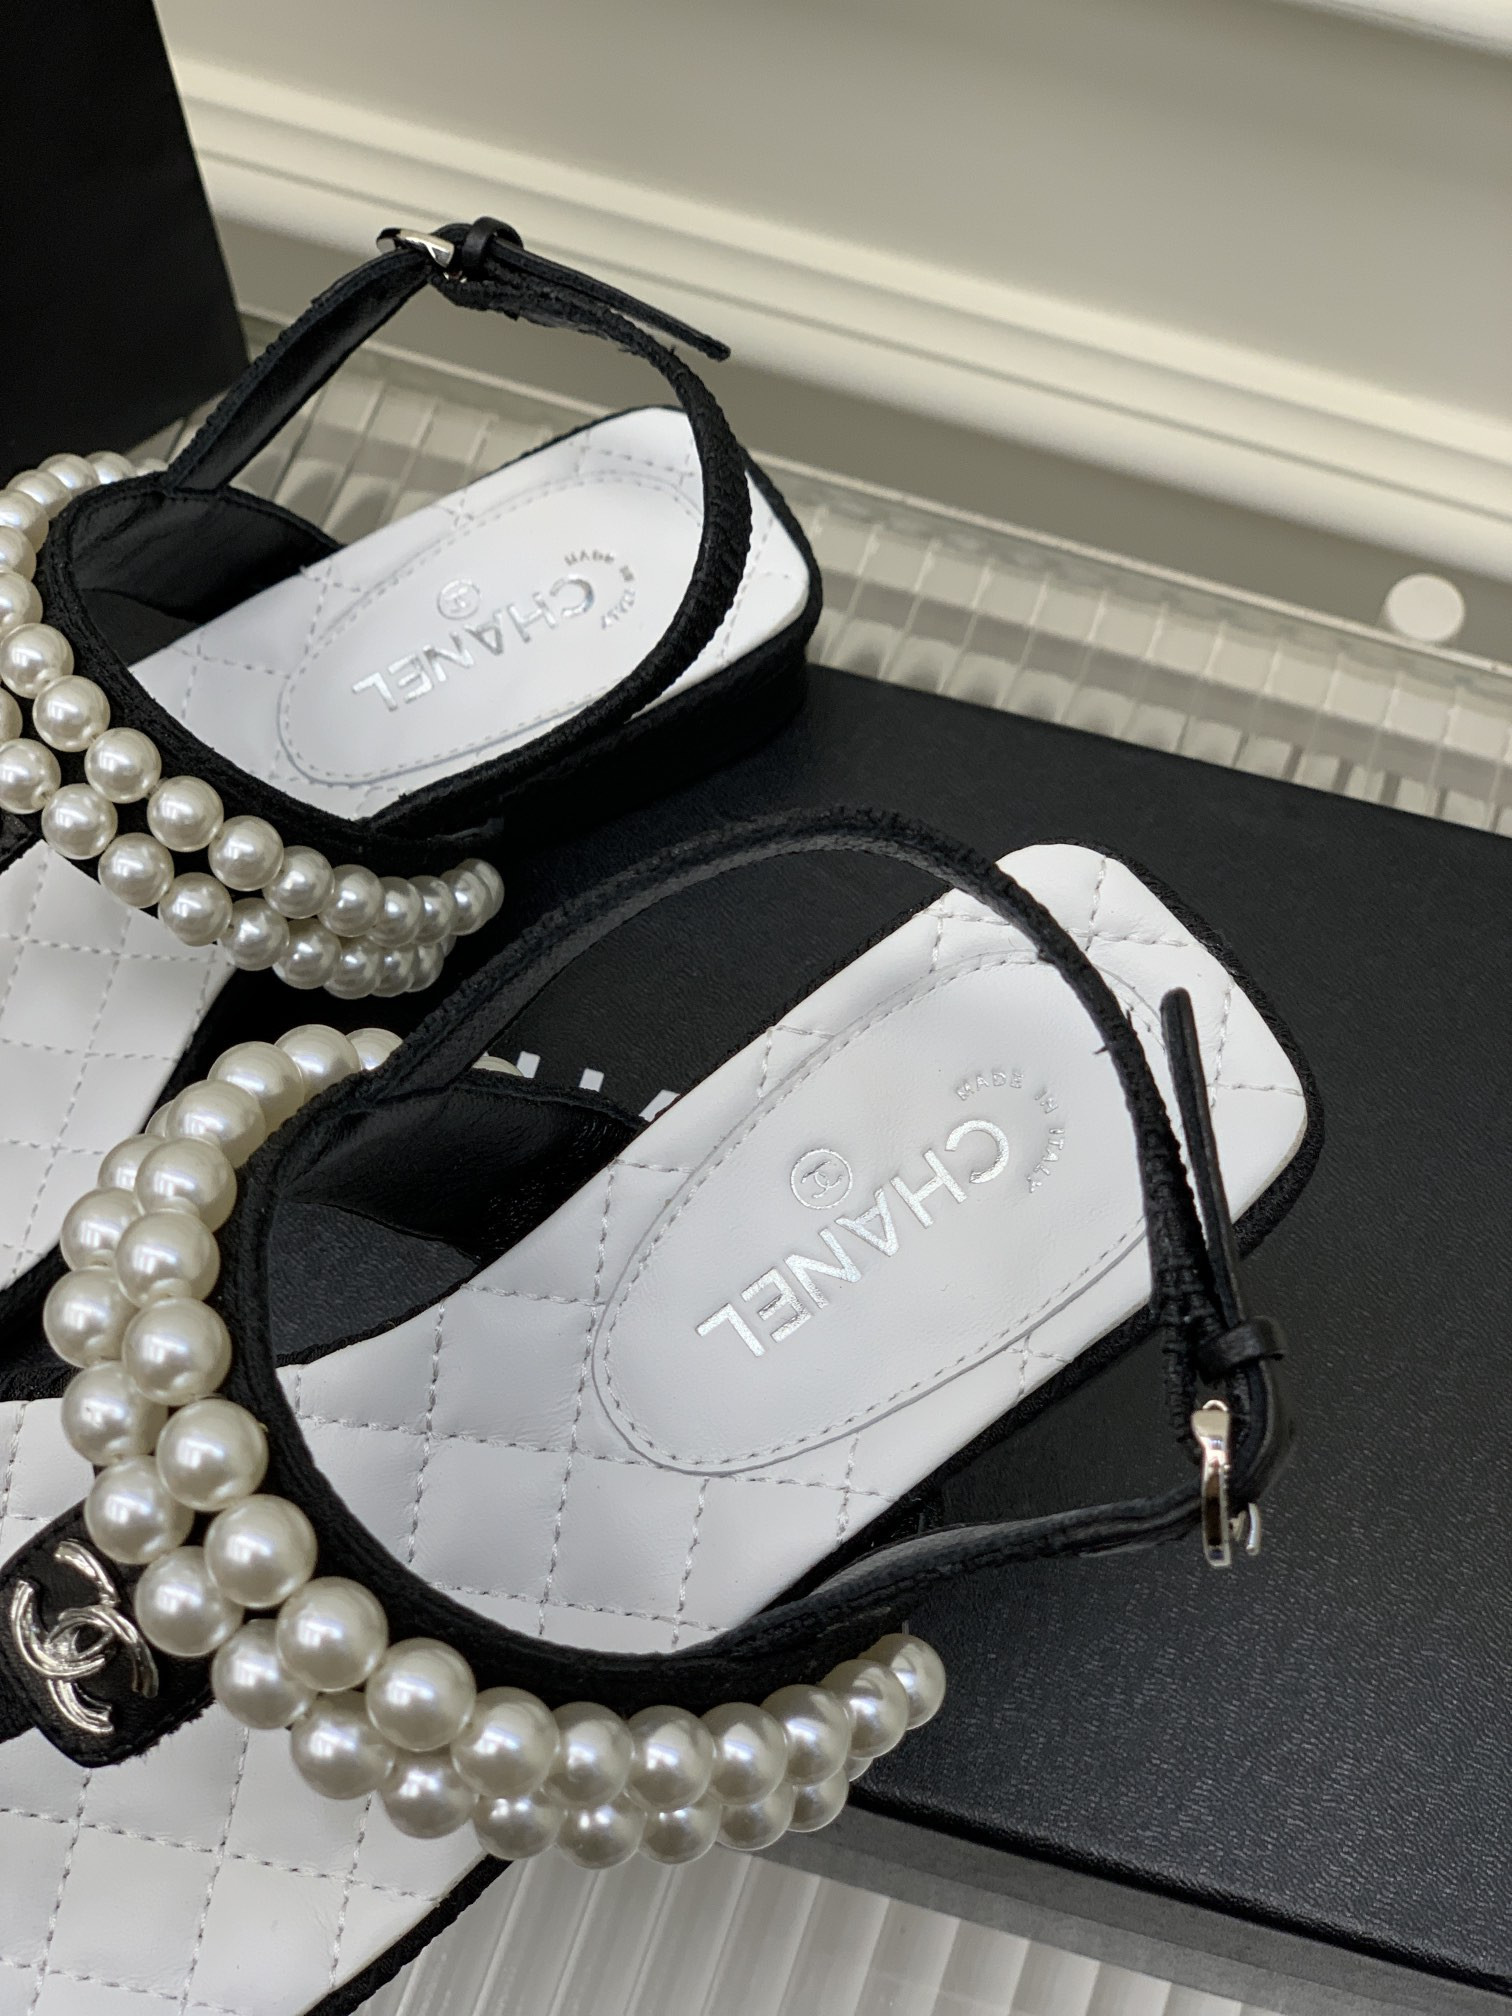 Giày Chanel Siêu Cấp Sandal Bệt Xỏ Ngón Màu Trắng Kèm Quai Đính Hai Chuỗi Ngọc